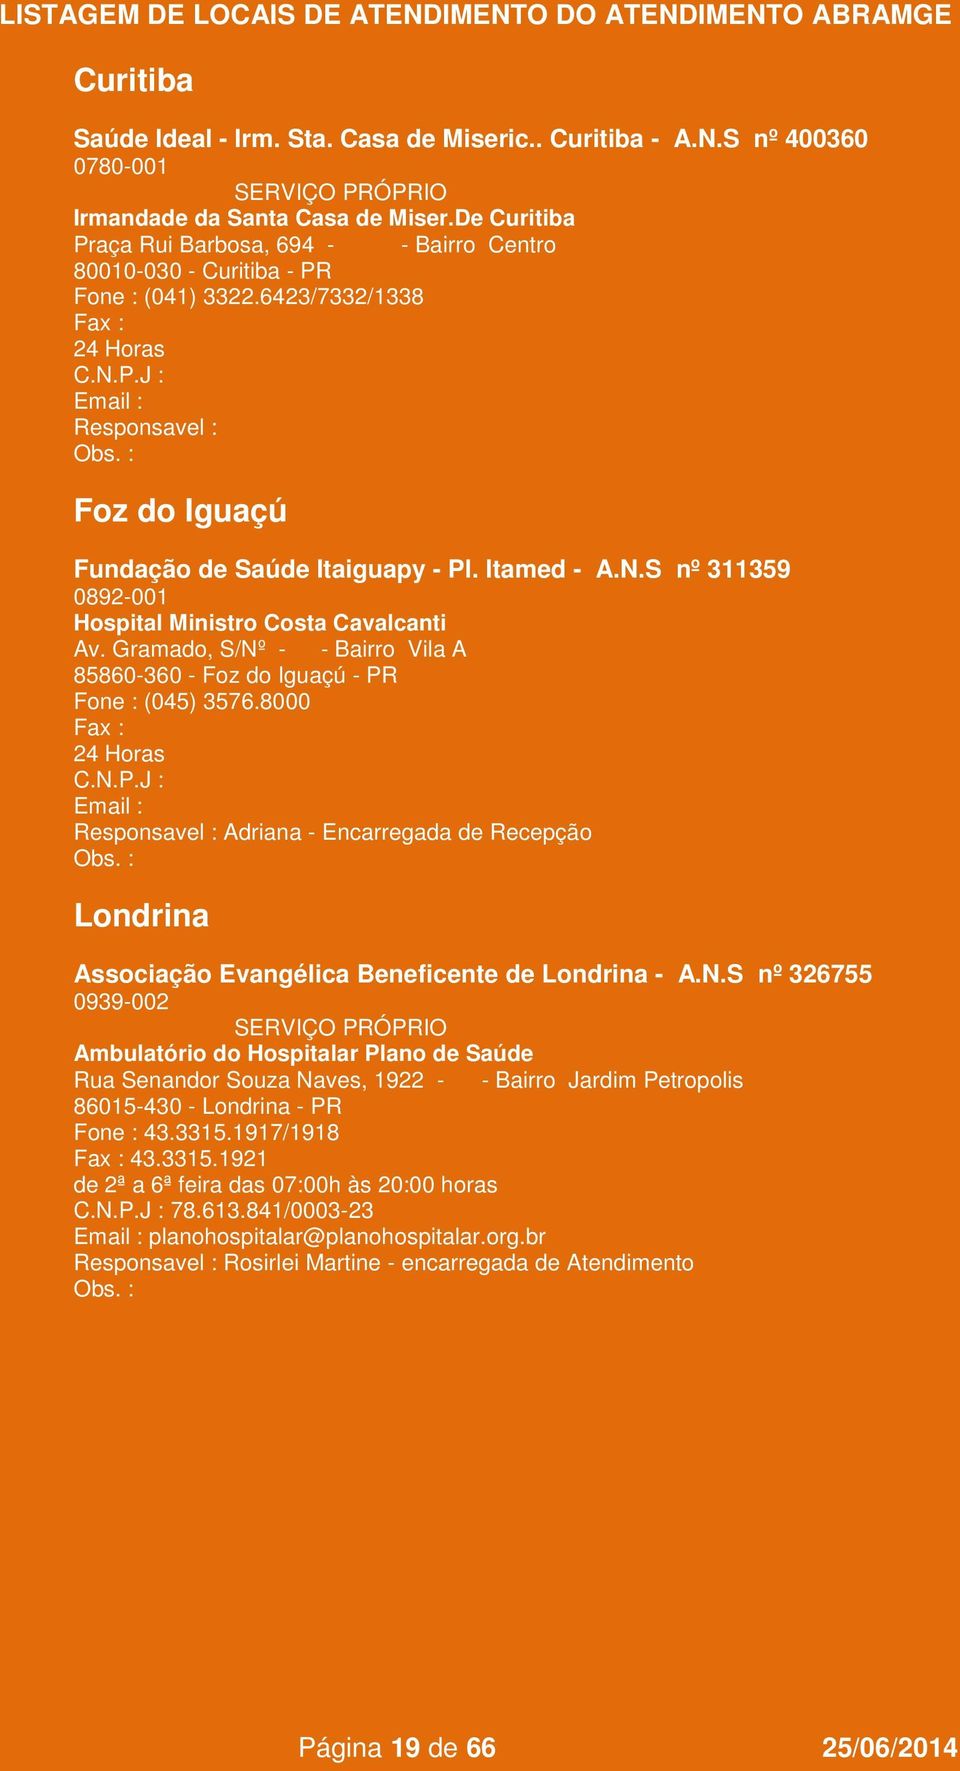 S nº 311359 0892-001 Hospital Ministro Costa Cavalcanti Av. Gramado, S/Nº - - Bairro Vila A 85860-360 - Foz do Iguaçú - PR Fone : (045) 3576.